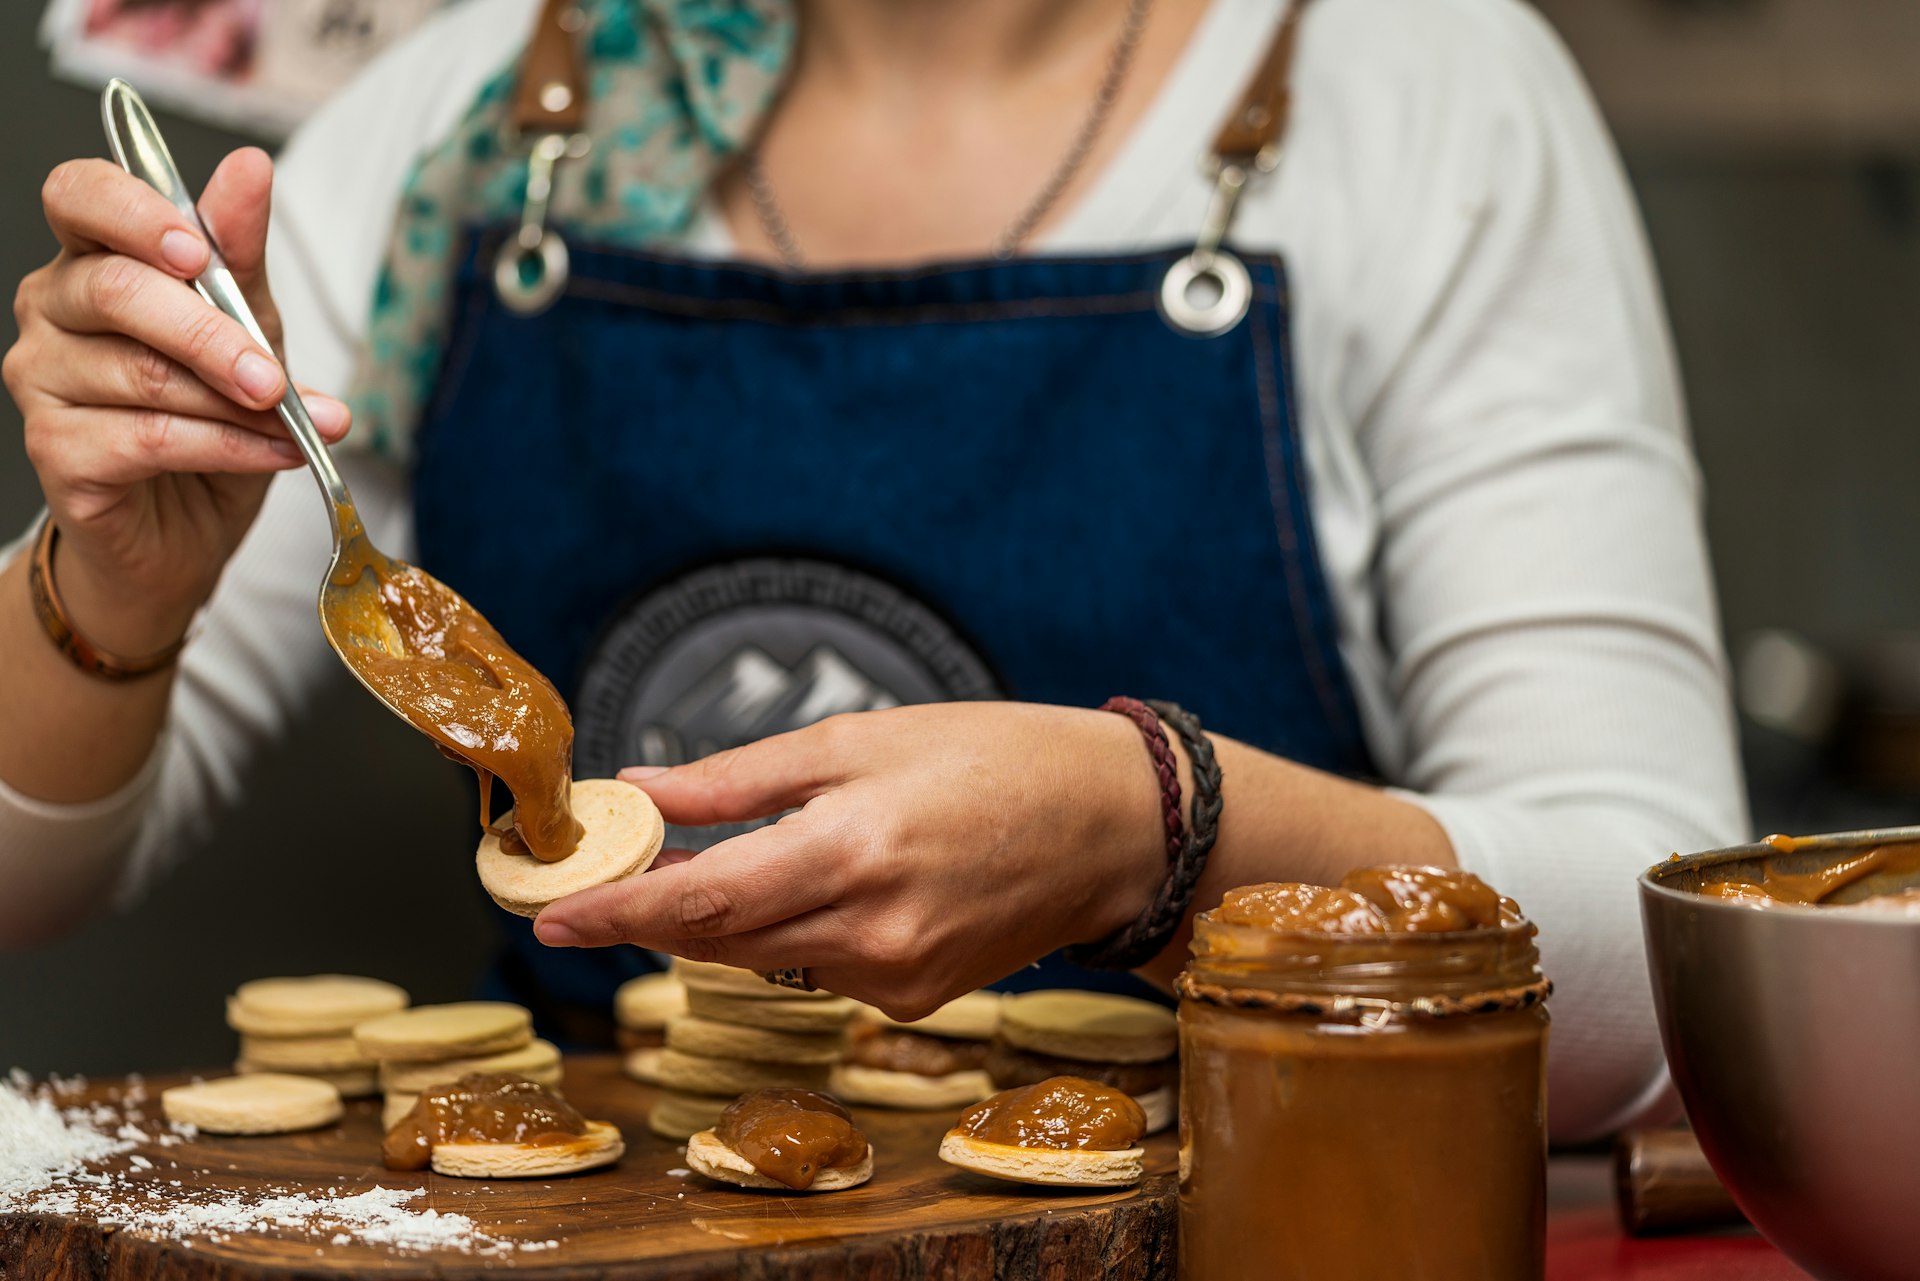 A woman combines dulce de leche with dough discs to make alfajores, Argentina